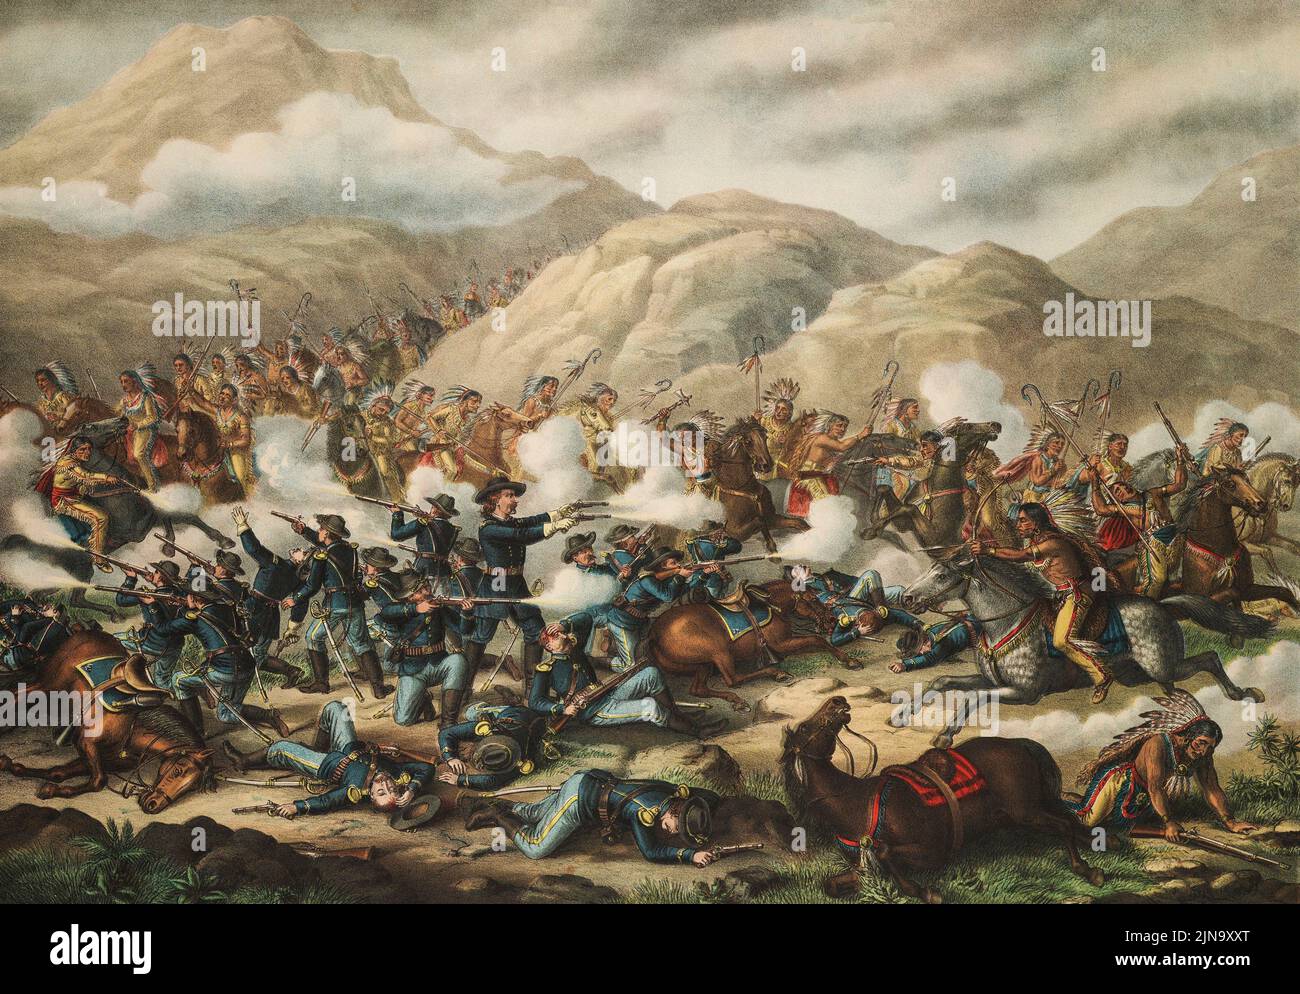 Dernière position de Custer à la bataille du petit Bighorn, 25 juin 1876. Général George Armstrong Custer, 1839 - 1876. La bataille a été la plus importante de la Grande Guerre des Sioux en 1876. Après une œuvre d'un artiste non identifié publiée en 1889 par Kurtz et Allison. Banque D'Images